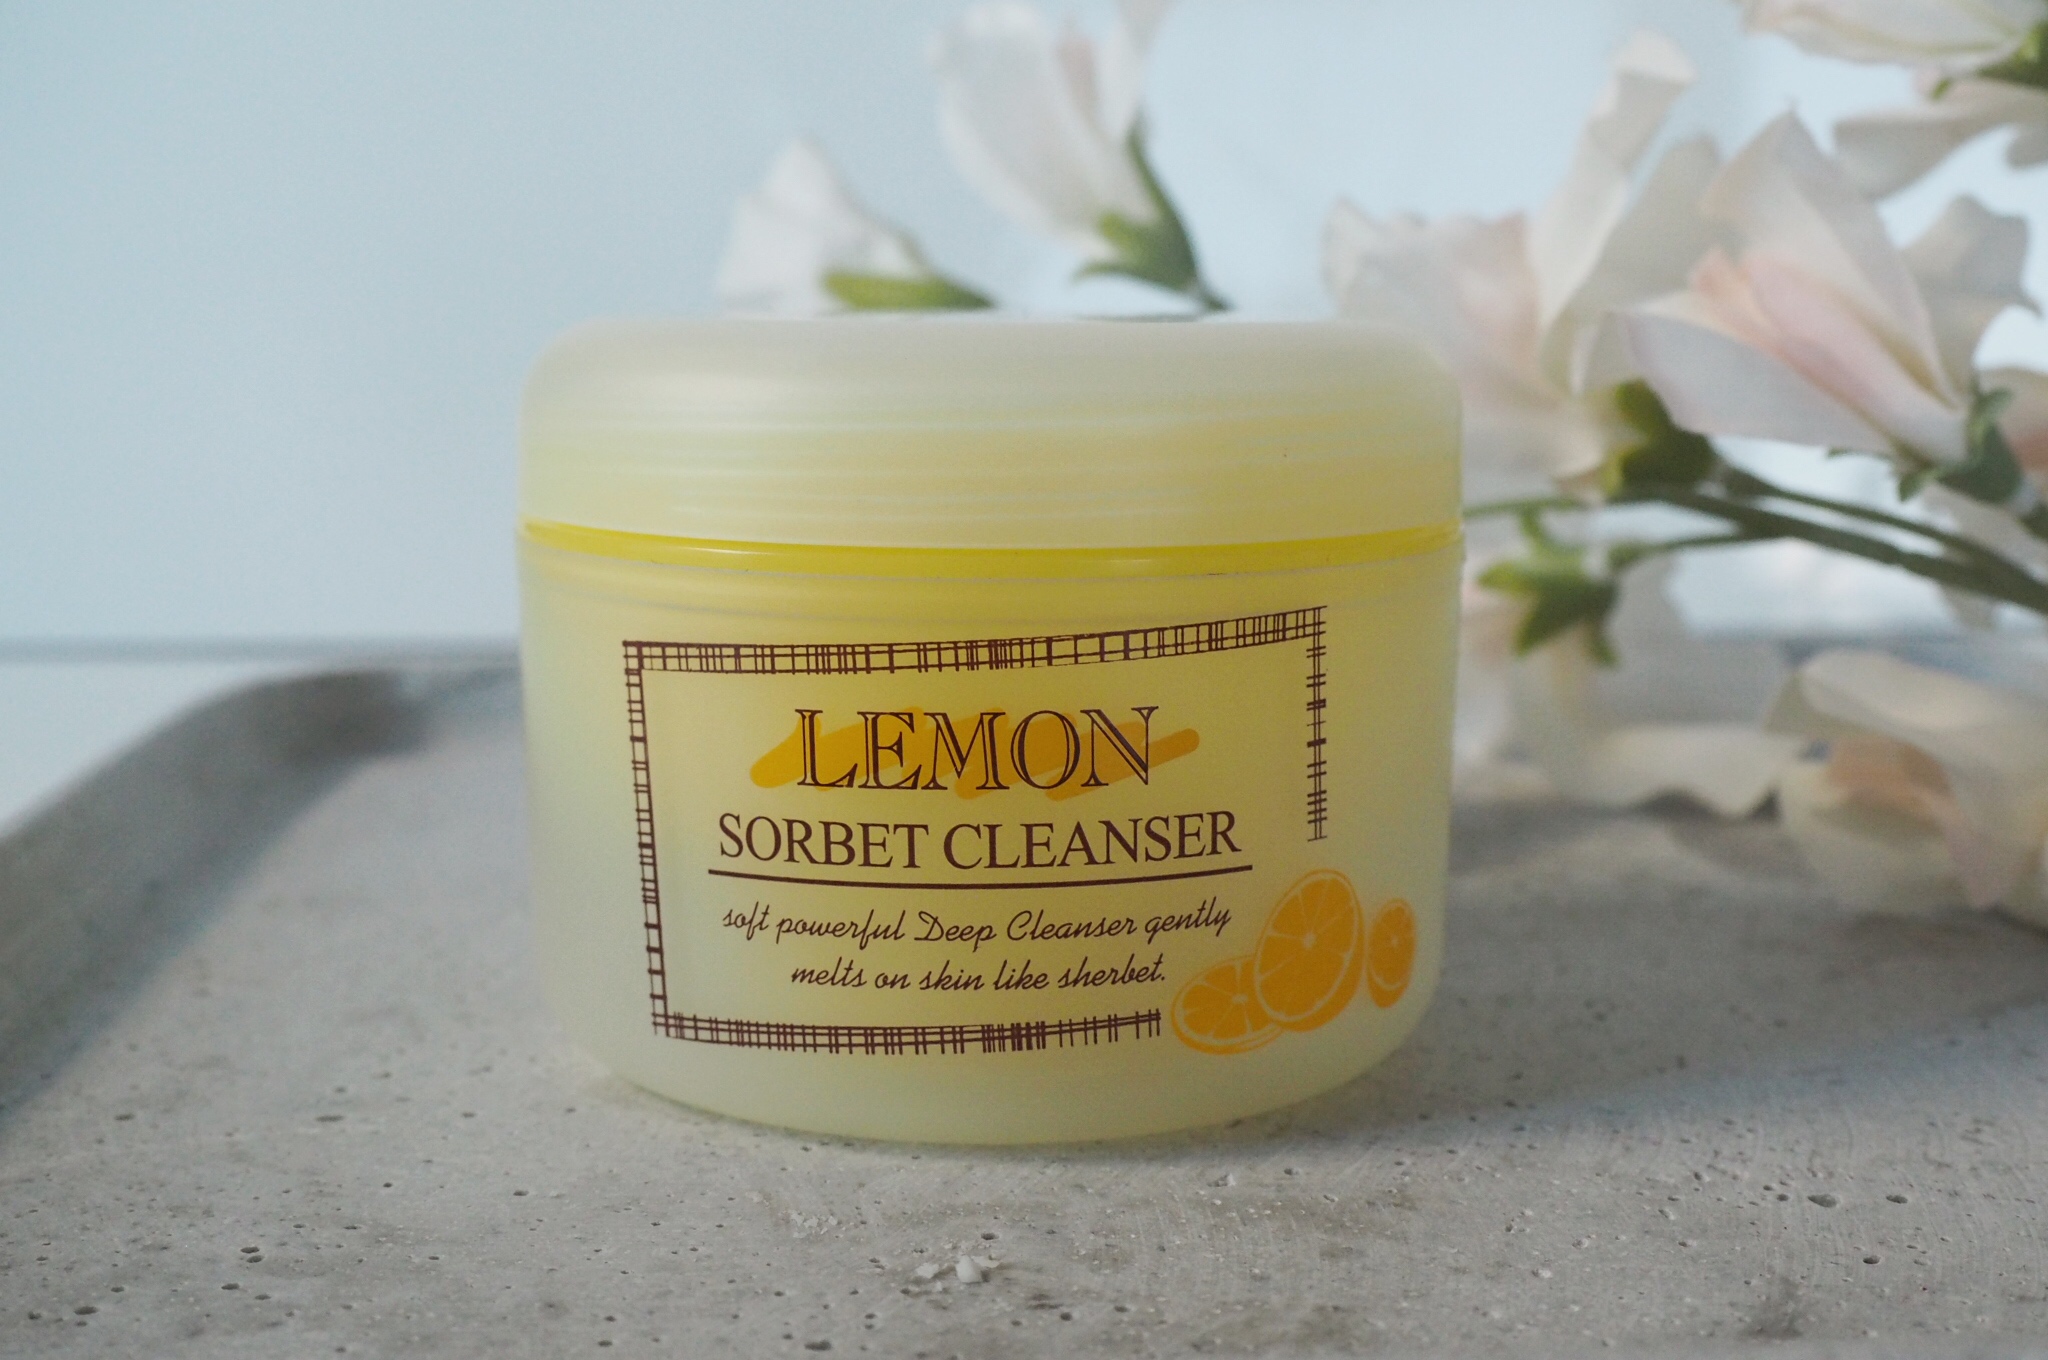 Lemon sorbet cleanser